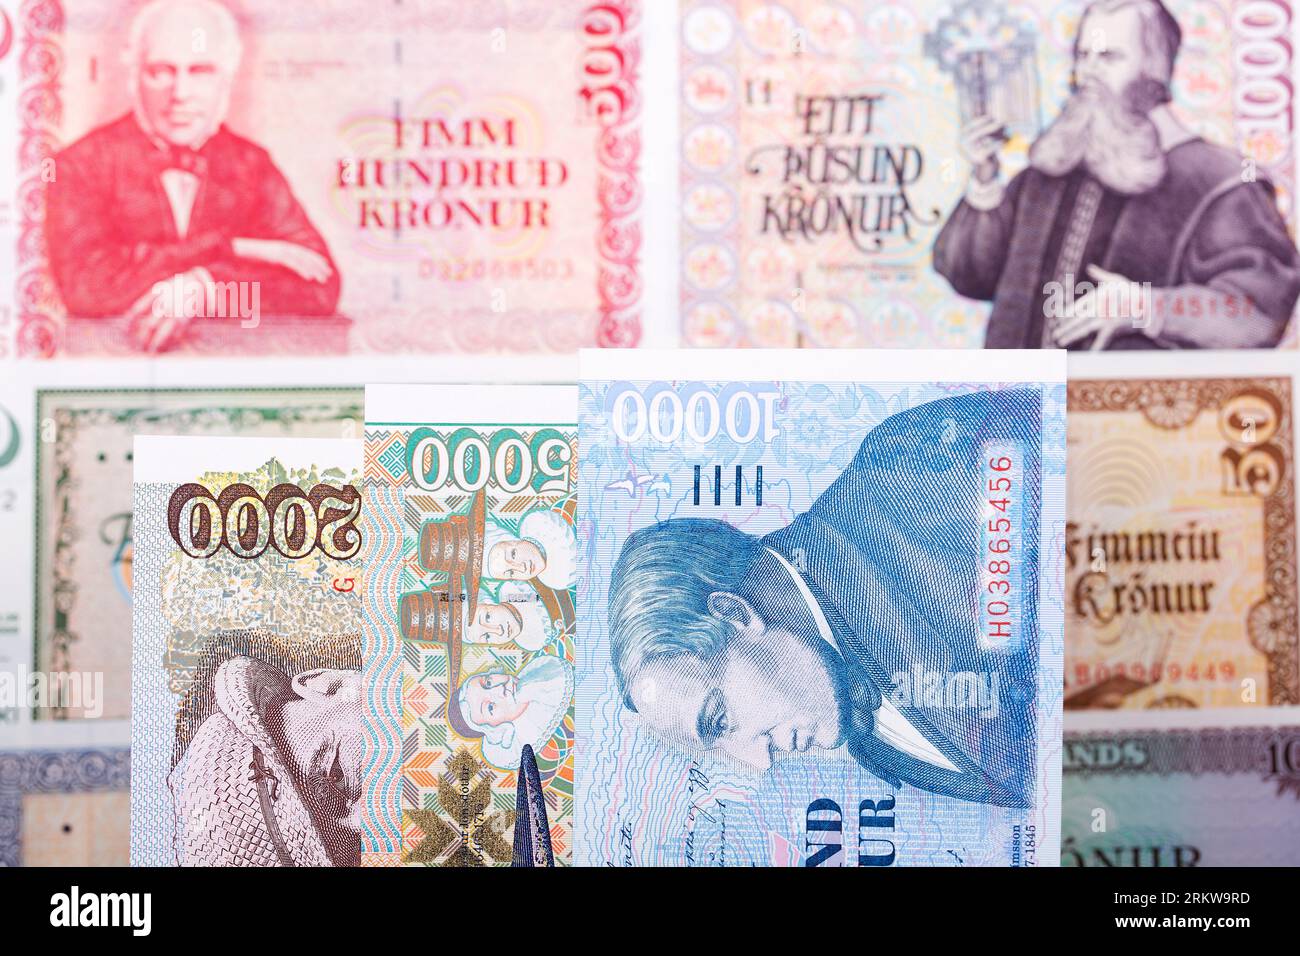 Icelandic Money - krona un contexte d'affaires Banque D'Images